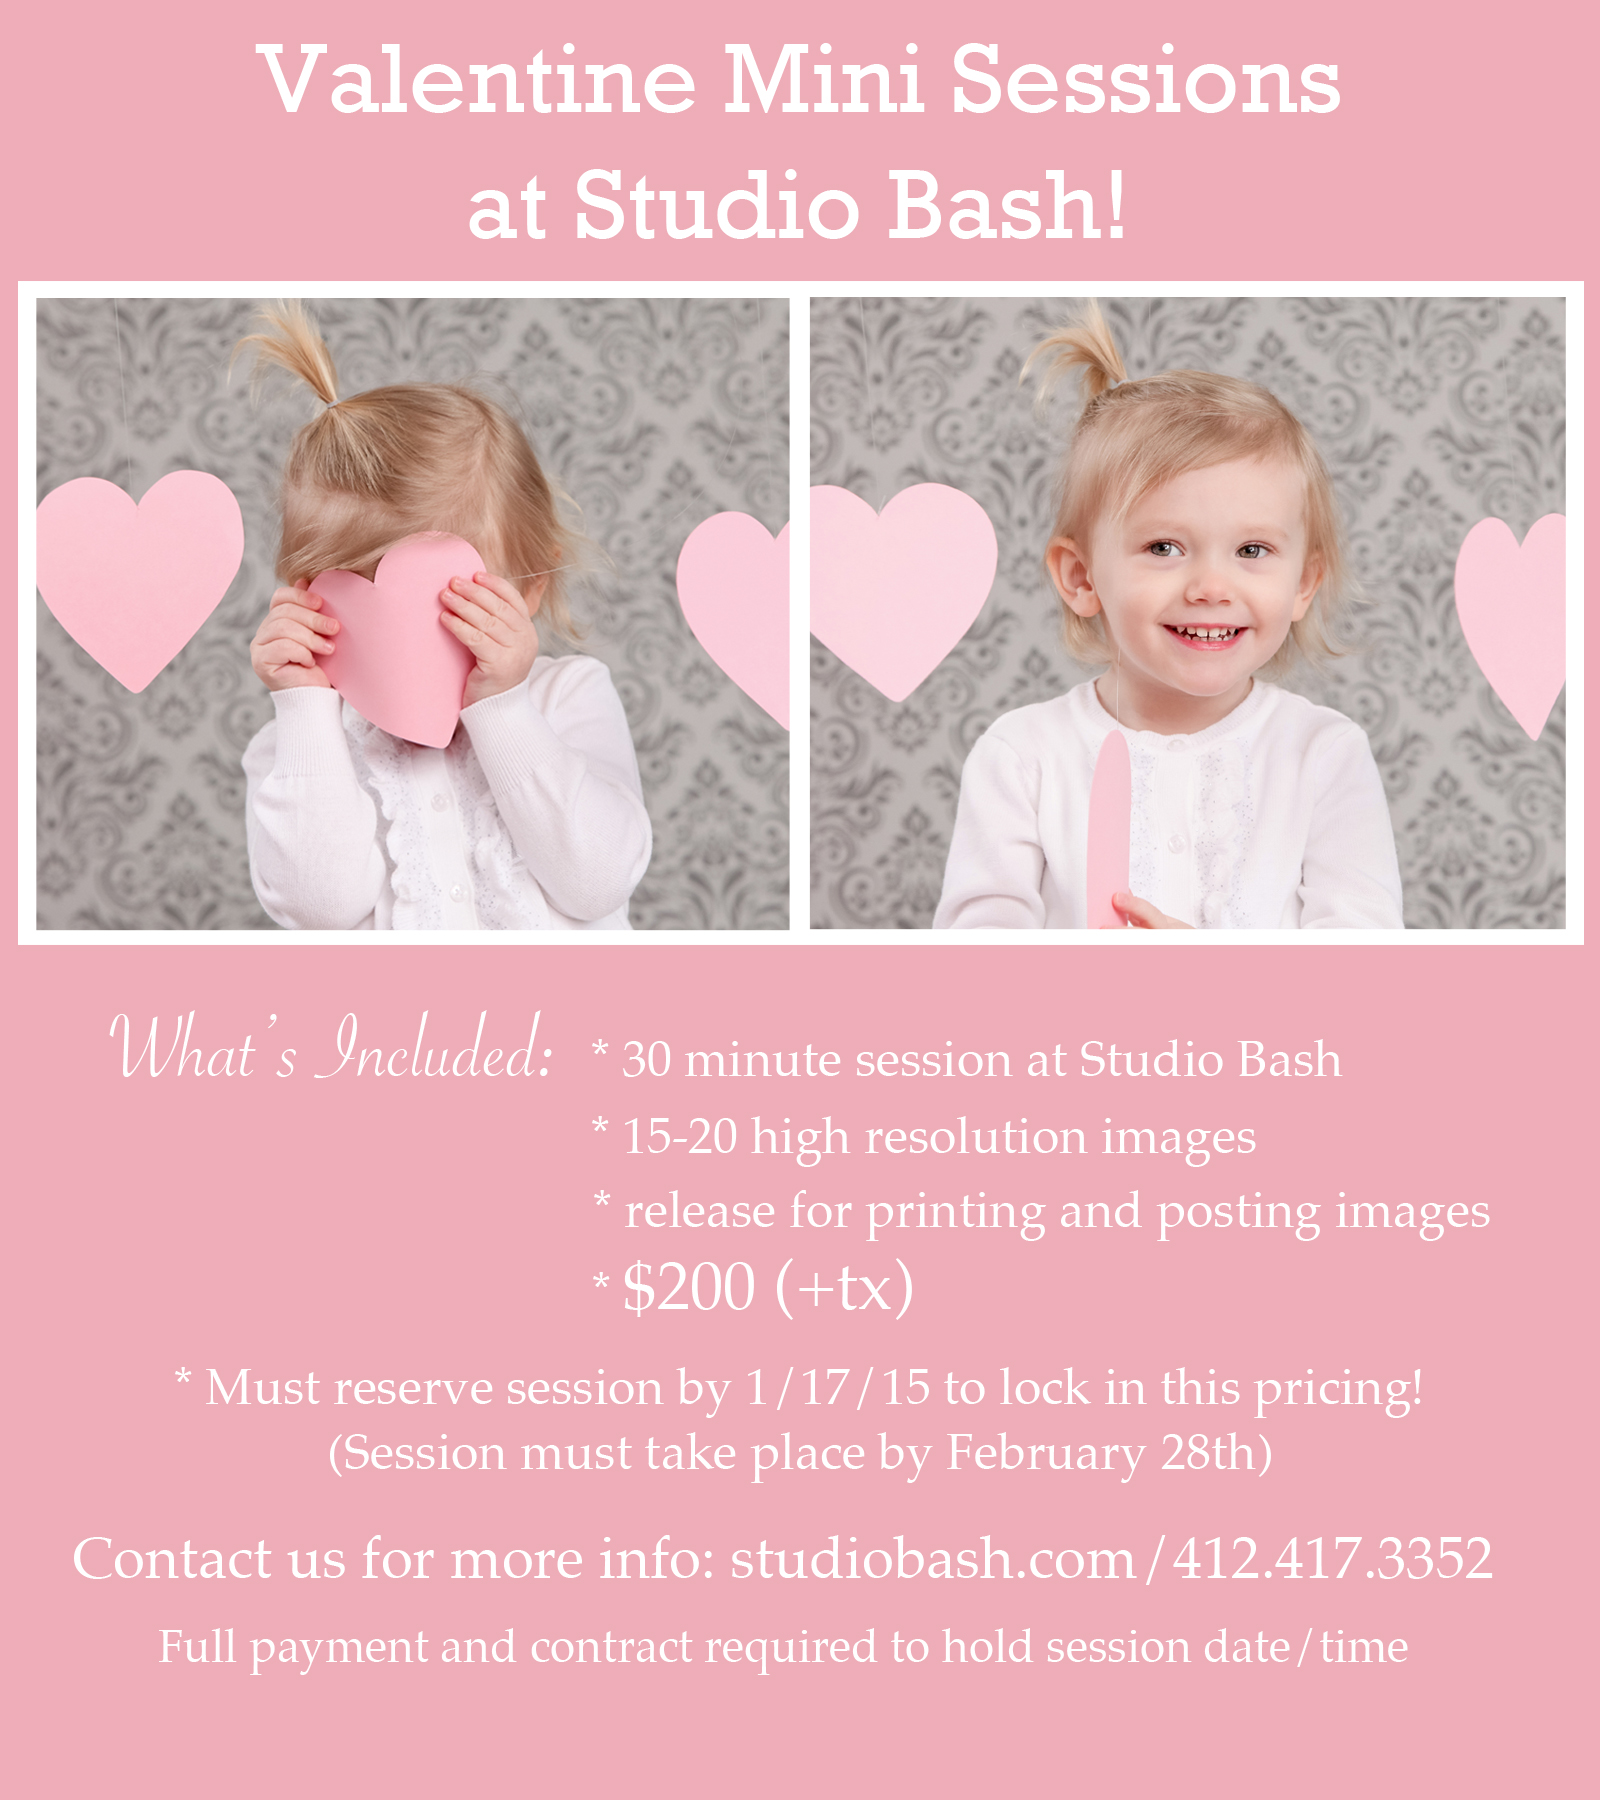 Valentine Mini Sessions at Studio Bash!